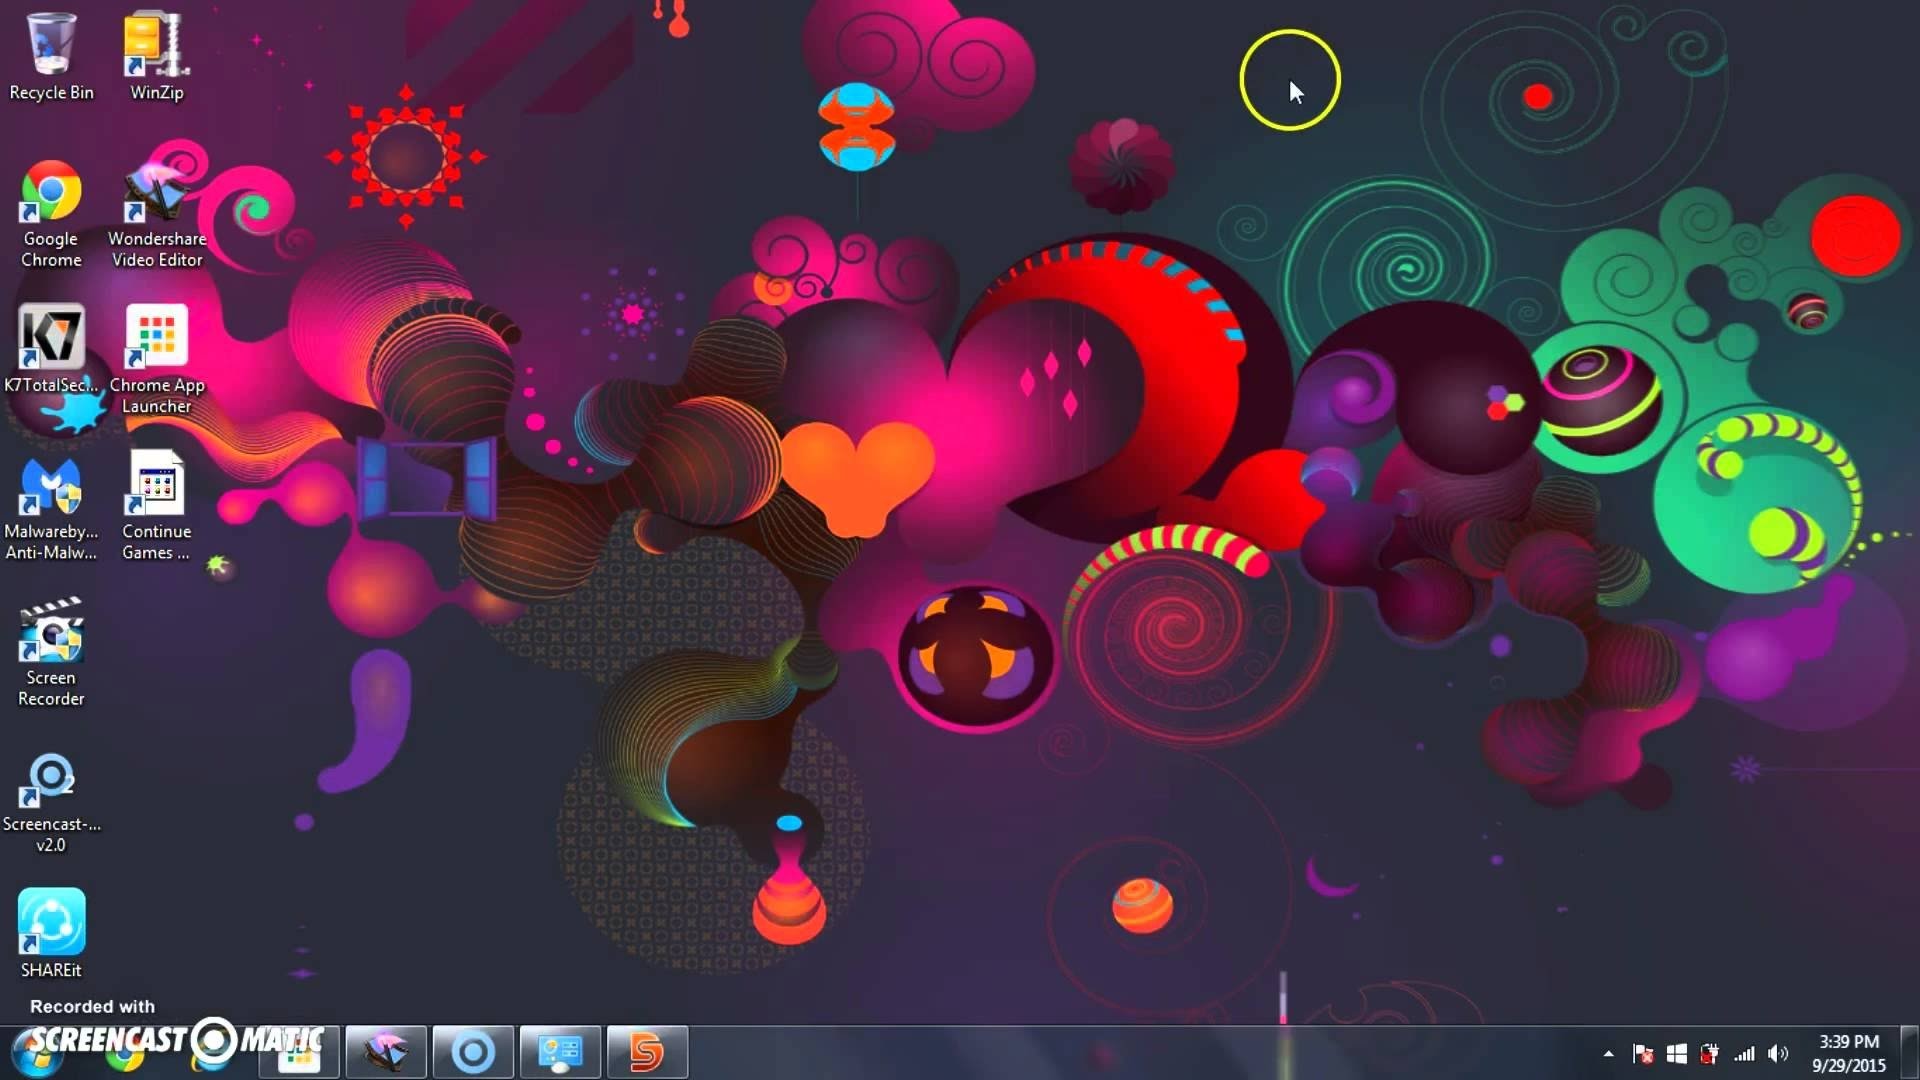 windows 8.1 wallpaper themen,violett,lila,bildschirmfoto,grafikdesign,buntheit